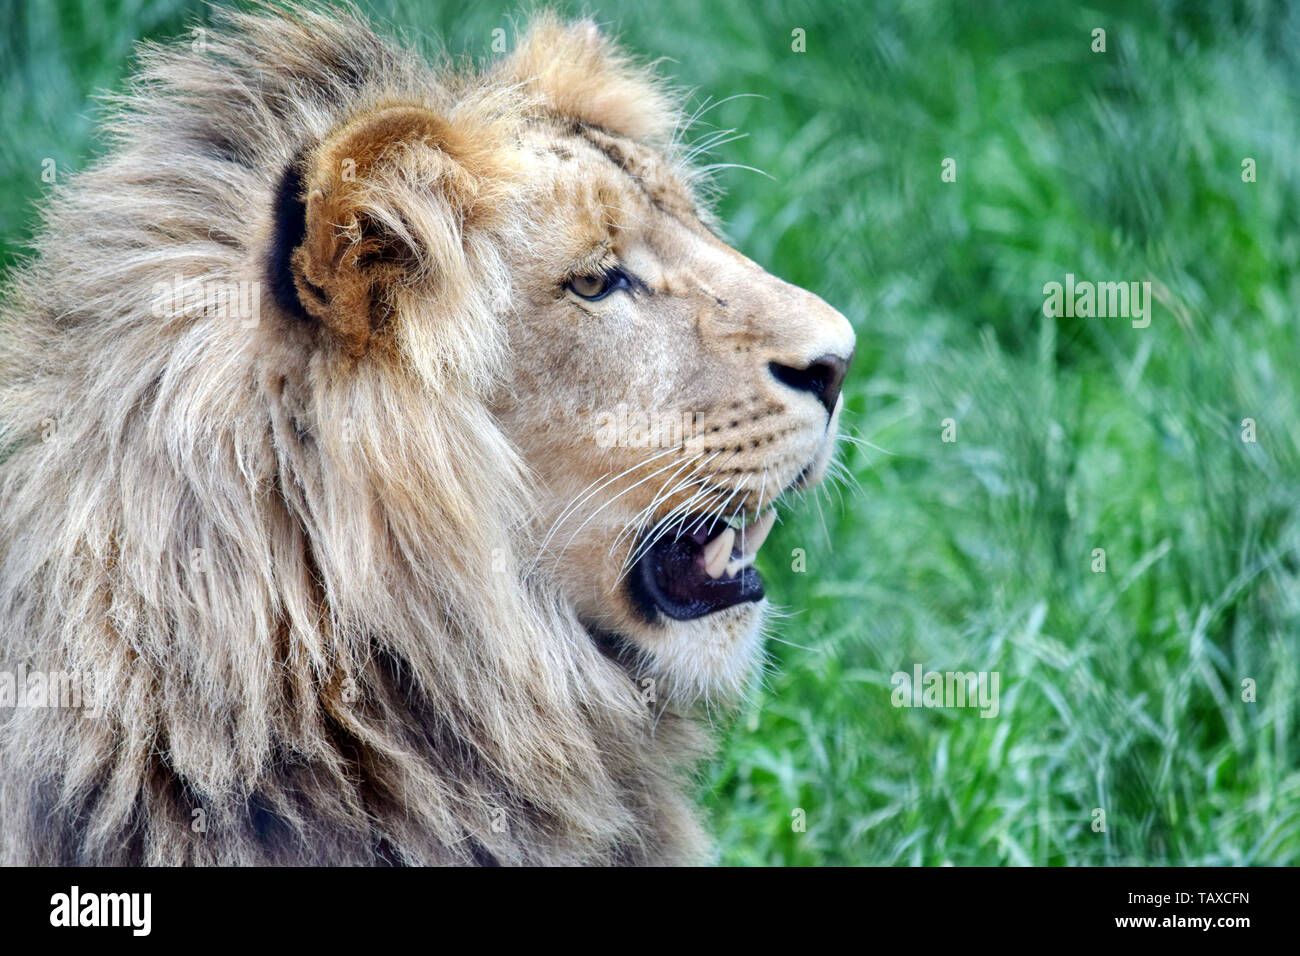 Male Katanga Lion Head Closeup Stock Photo